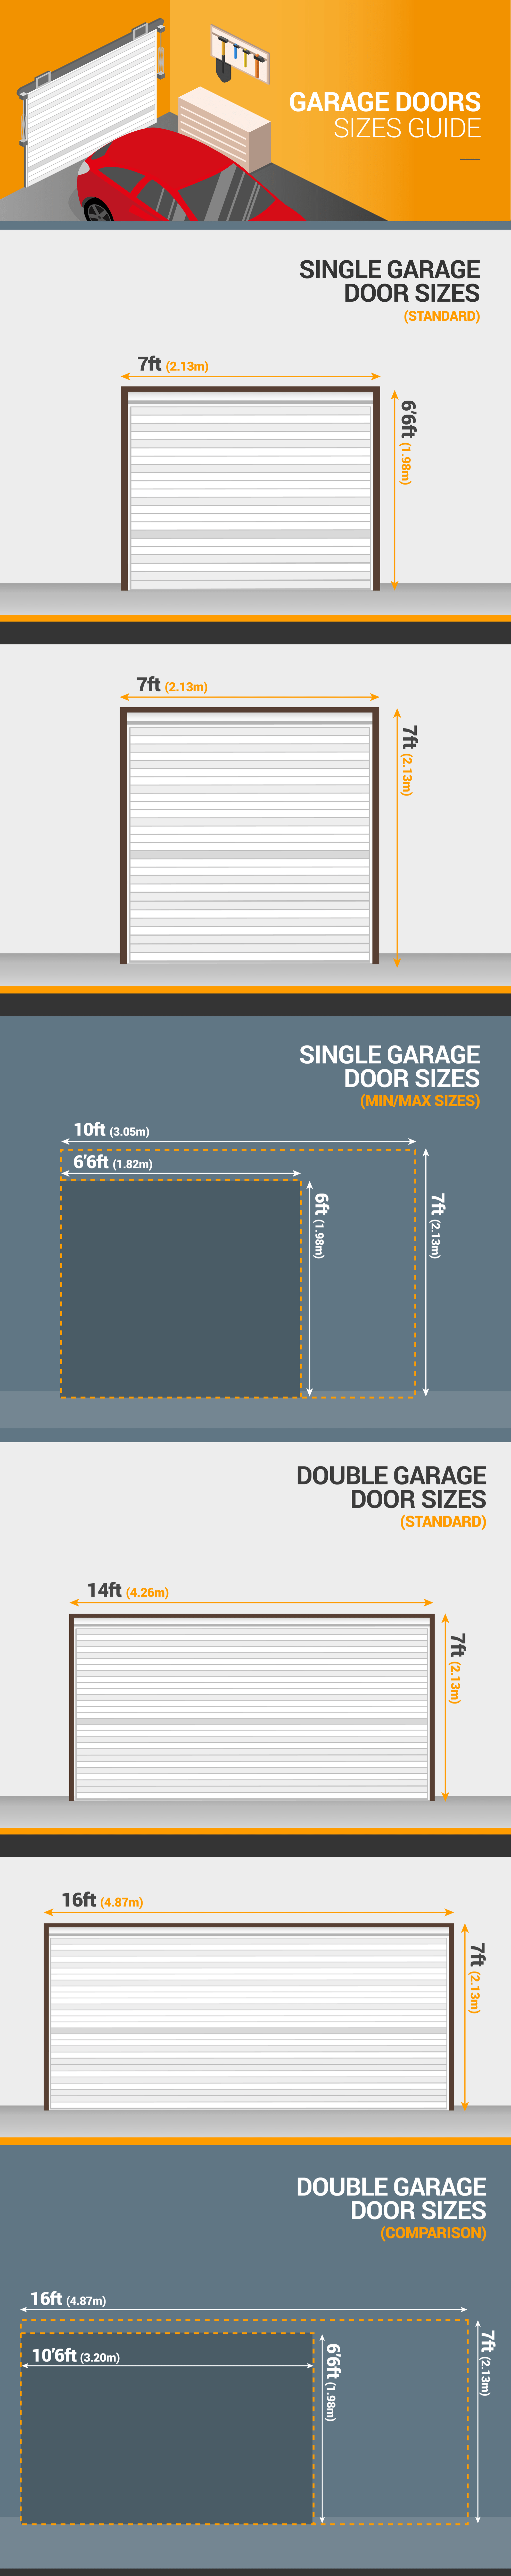 Standard Garage Door Dimensions, Uk Single Garage Door Size